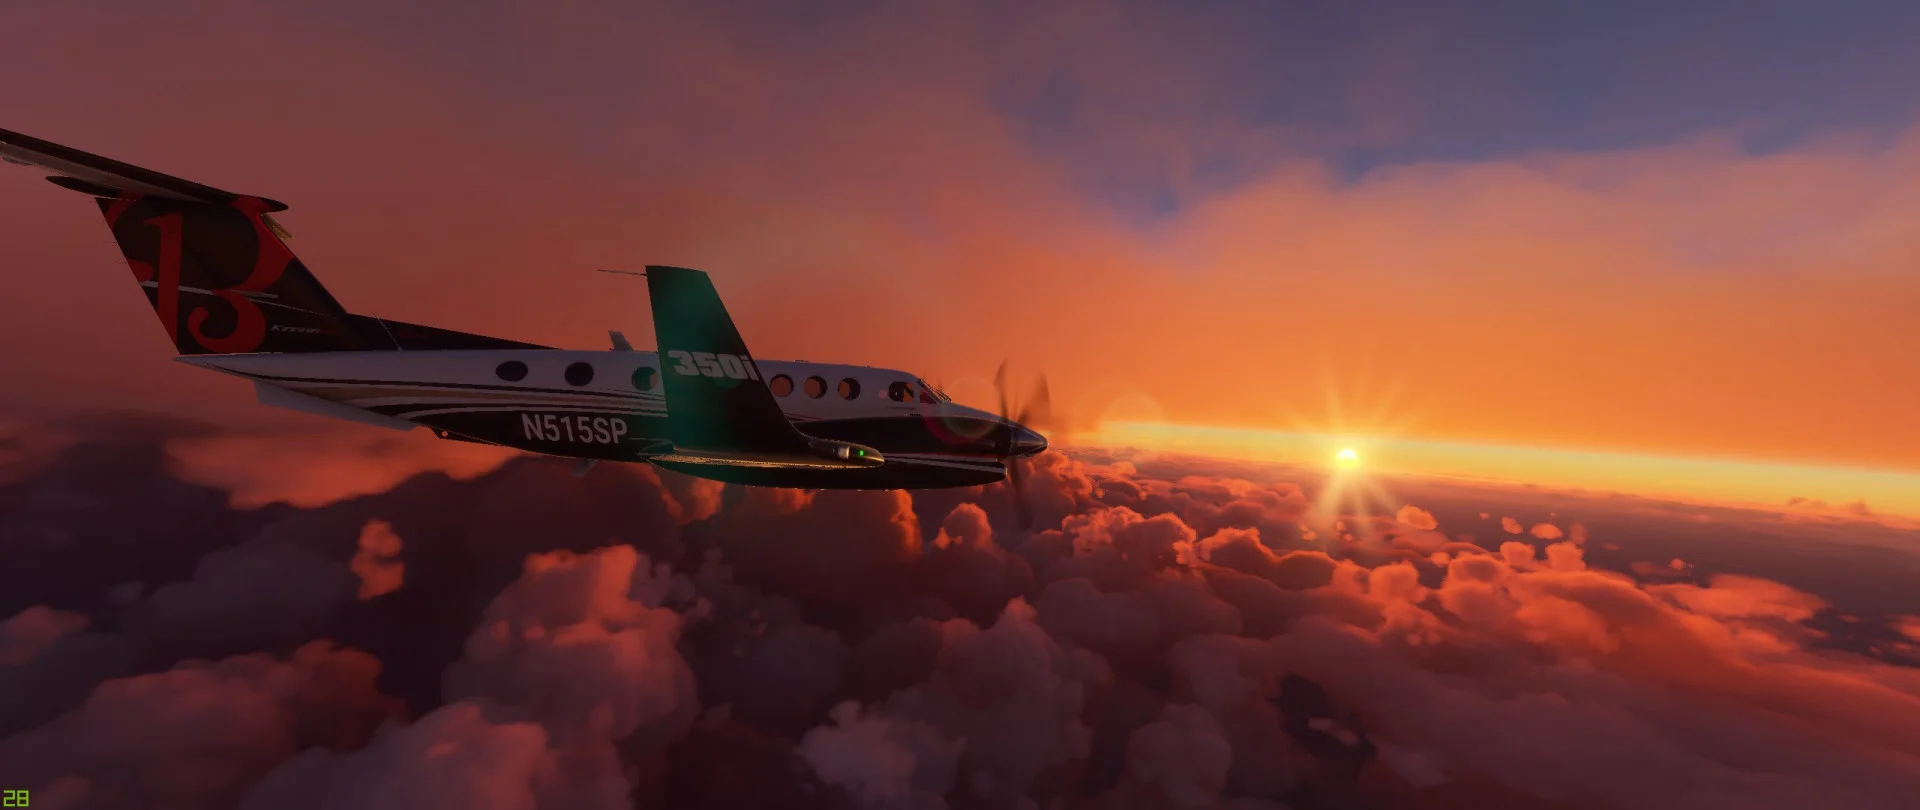 Microsoft Flight Simulator: самые красивые посты с Reddit и ночной Саратов - фото 3